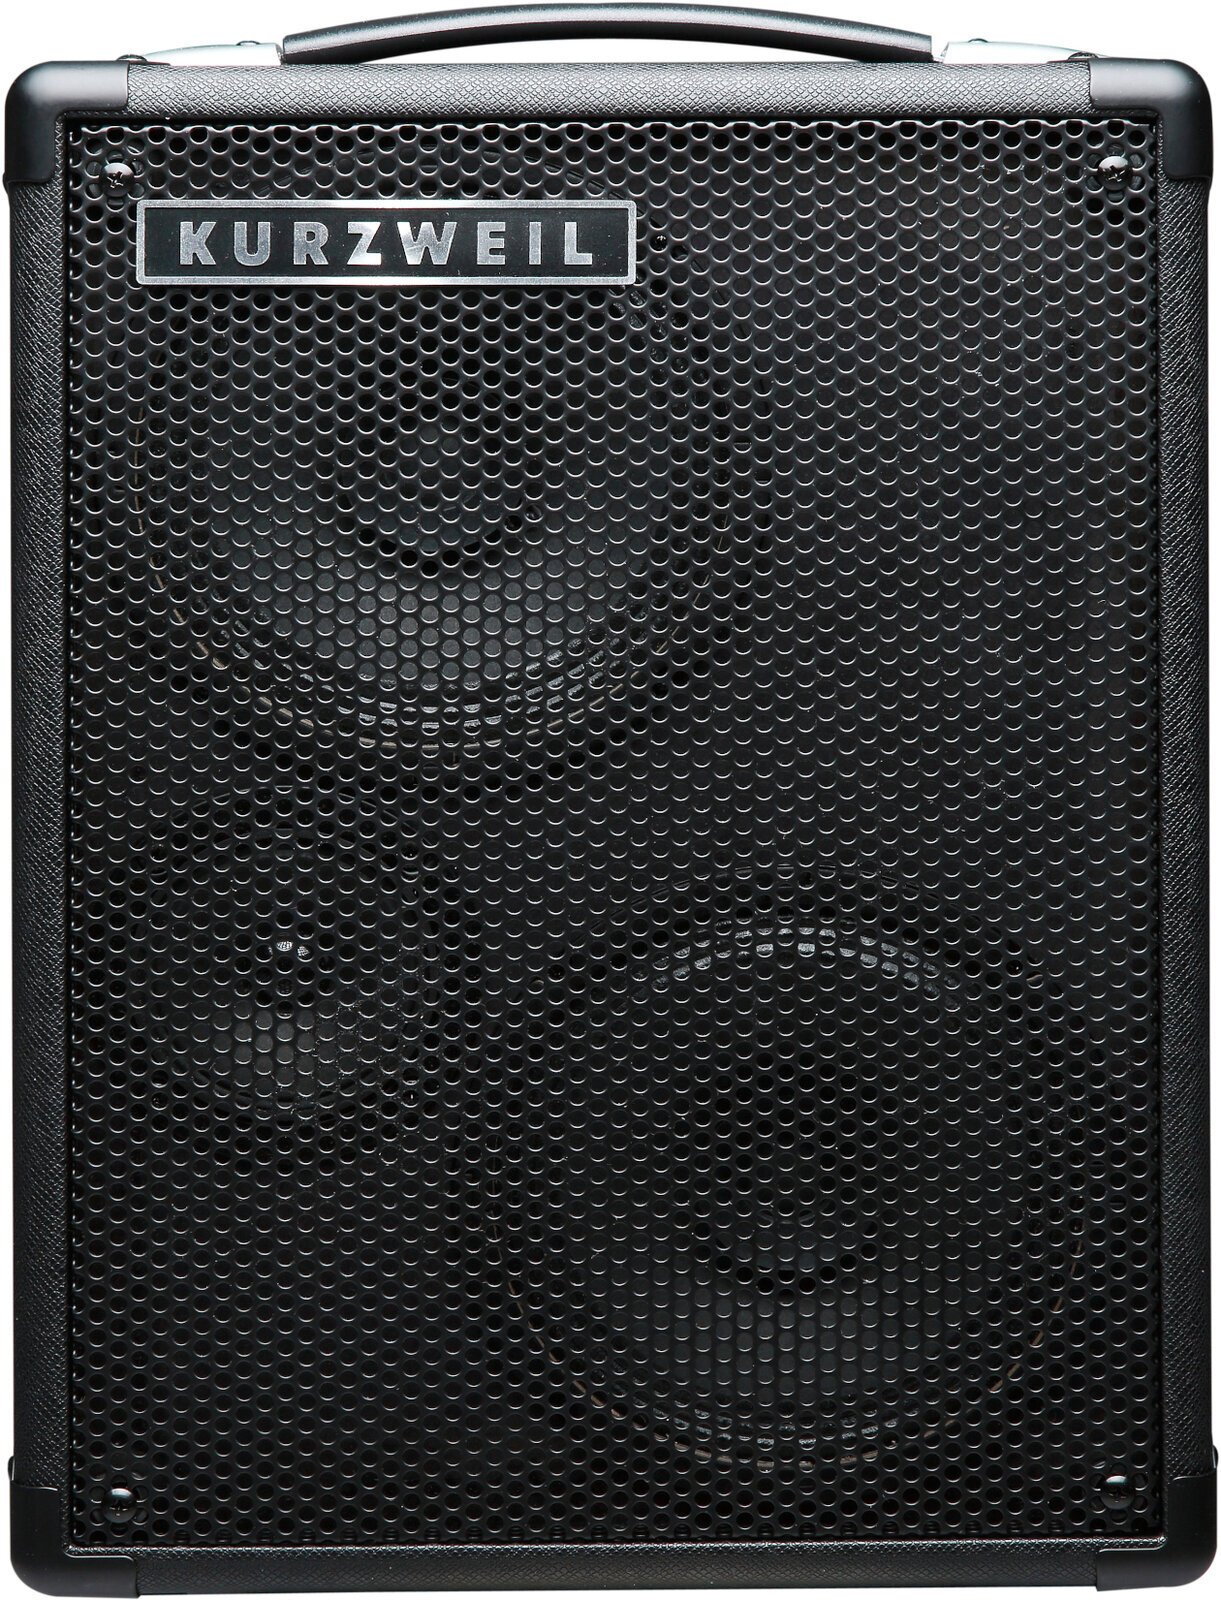 Keyboard-Verstärker Kurzweil KST300A (Nur ausgepackt)